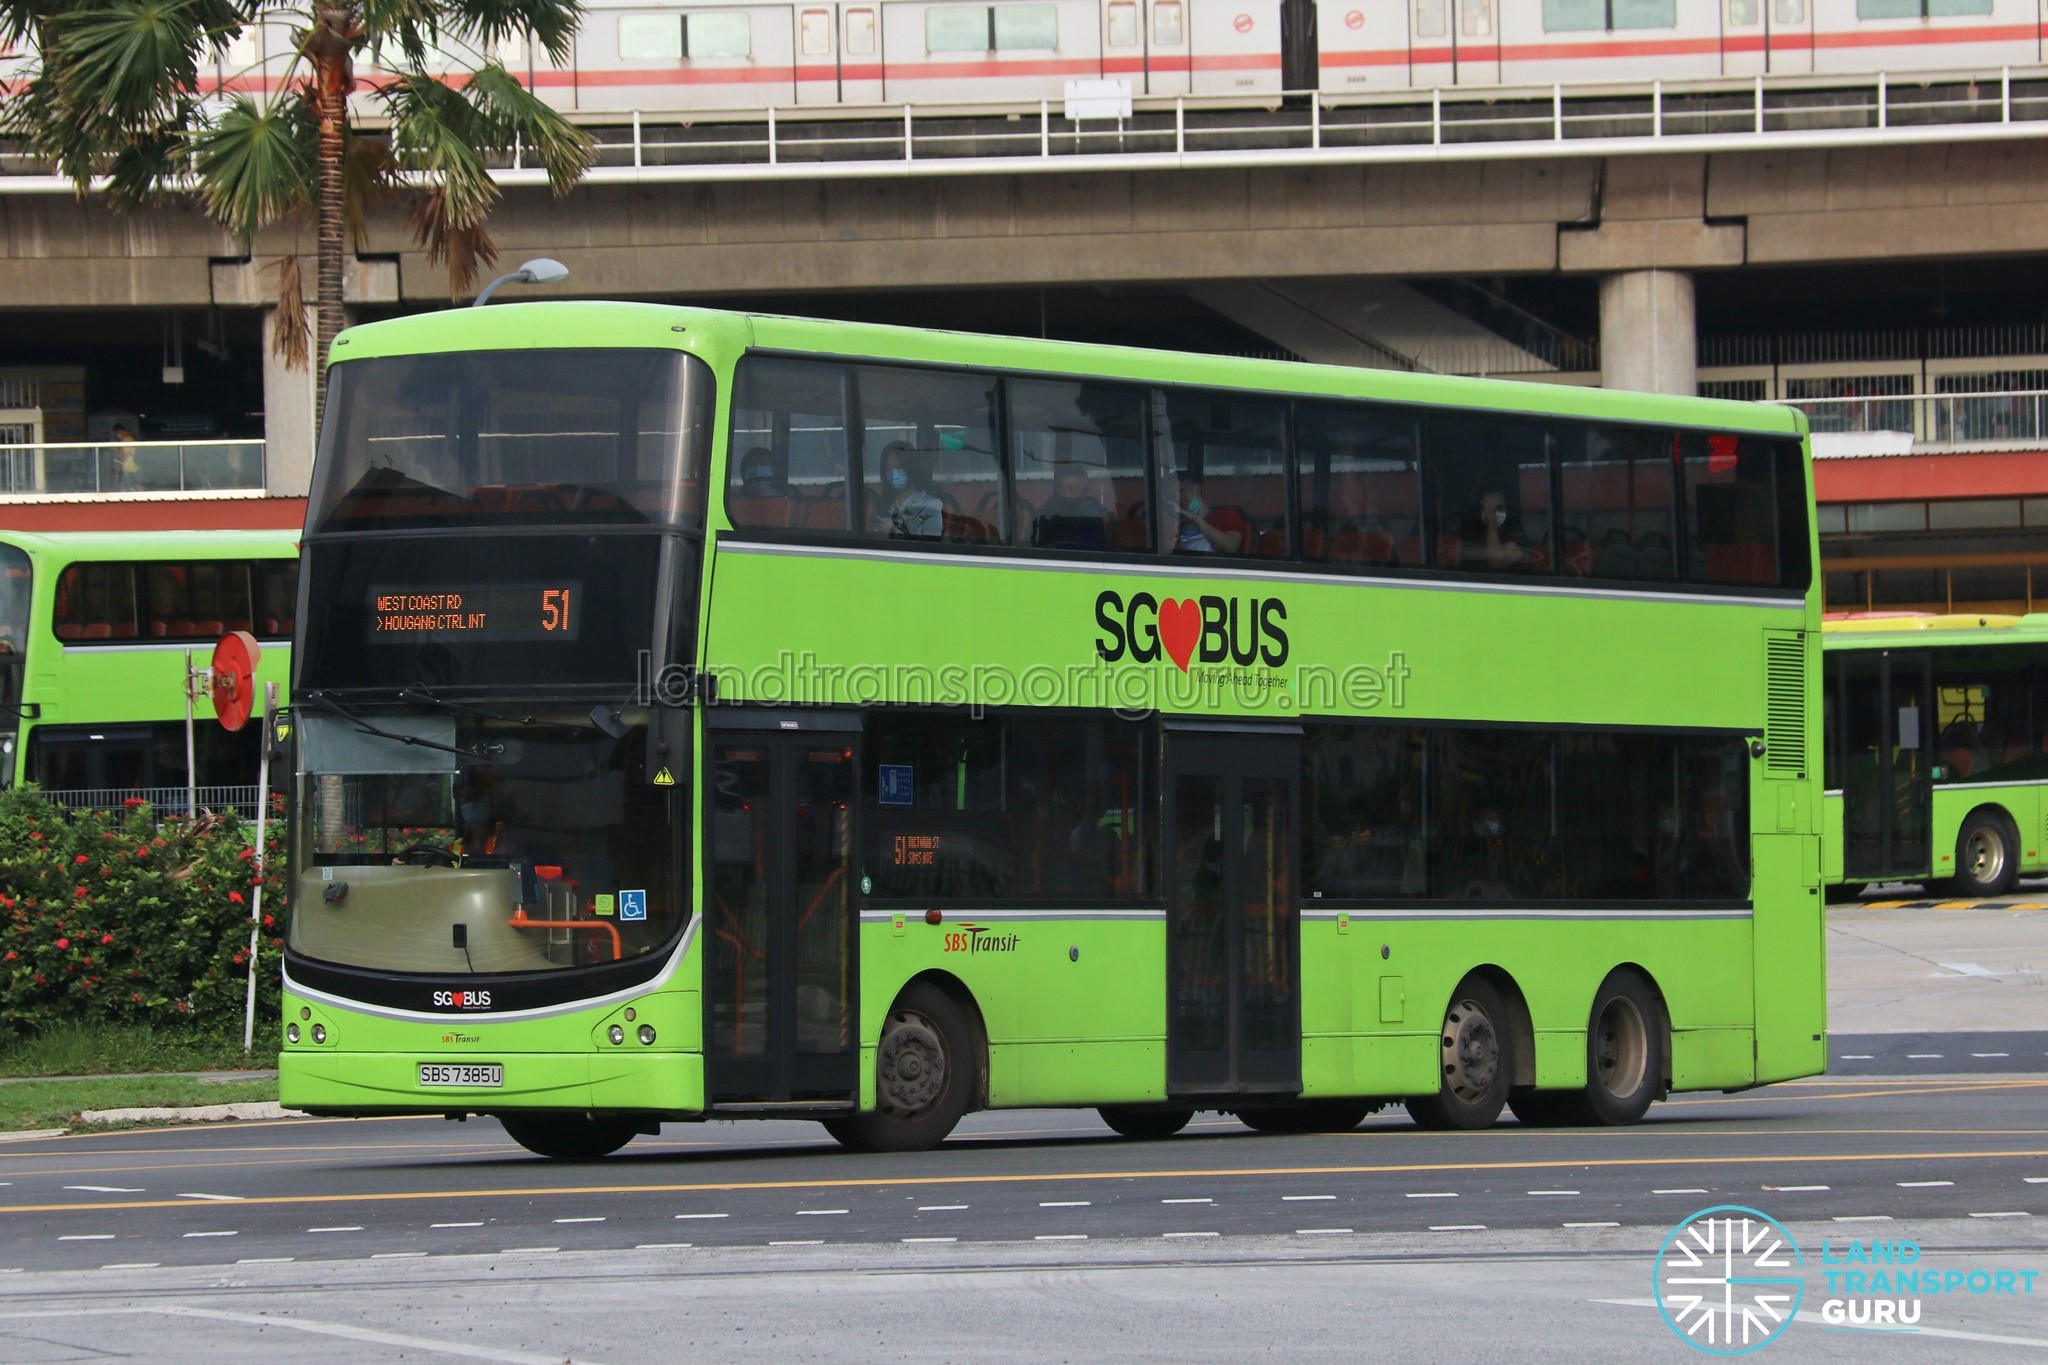 51 автобус минск